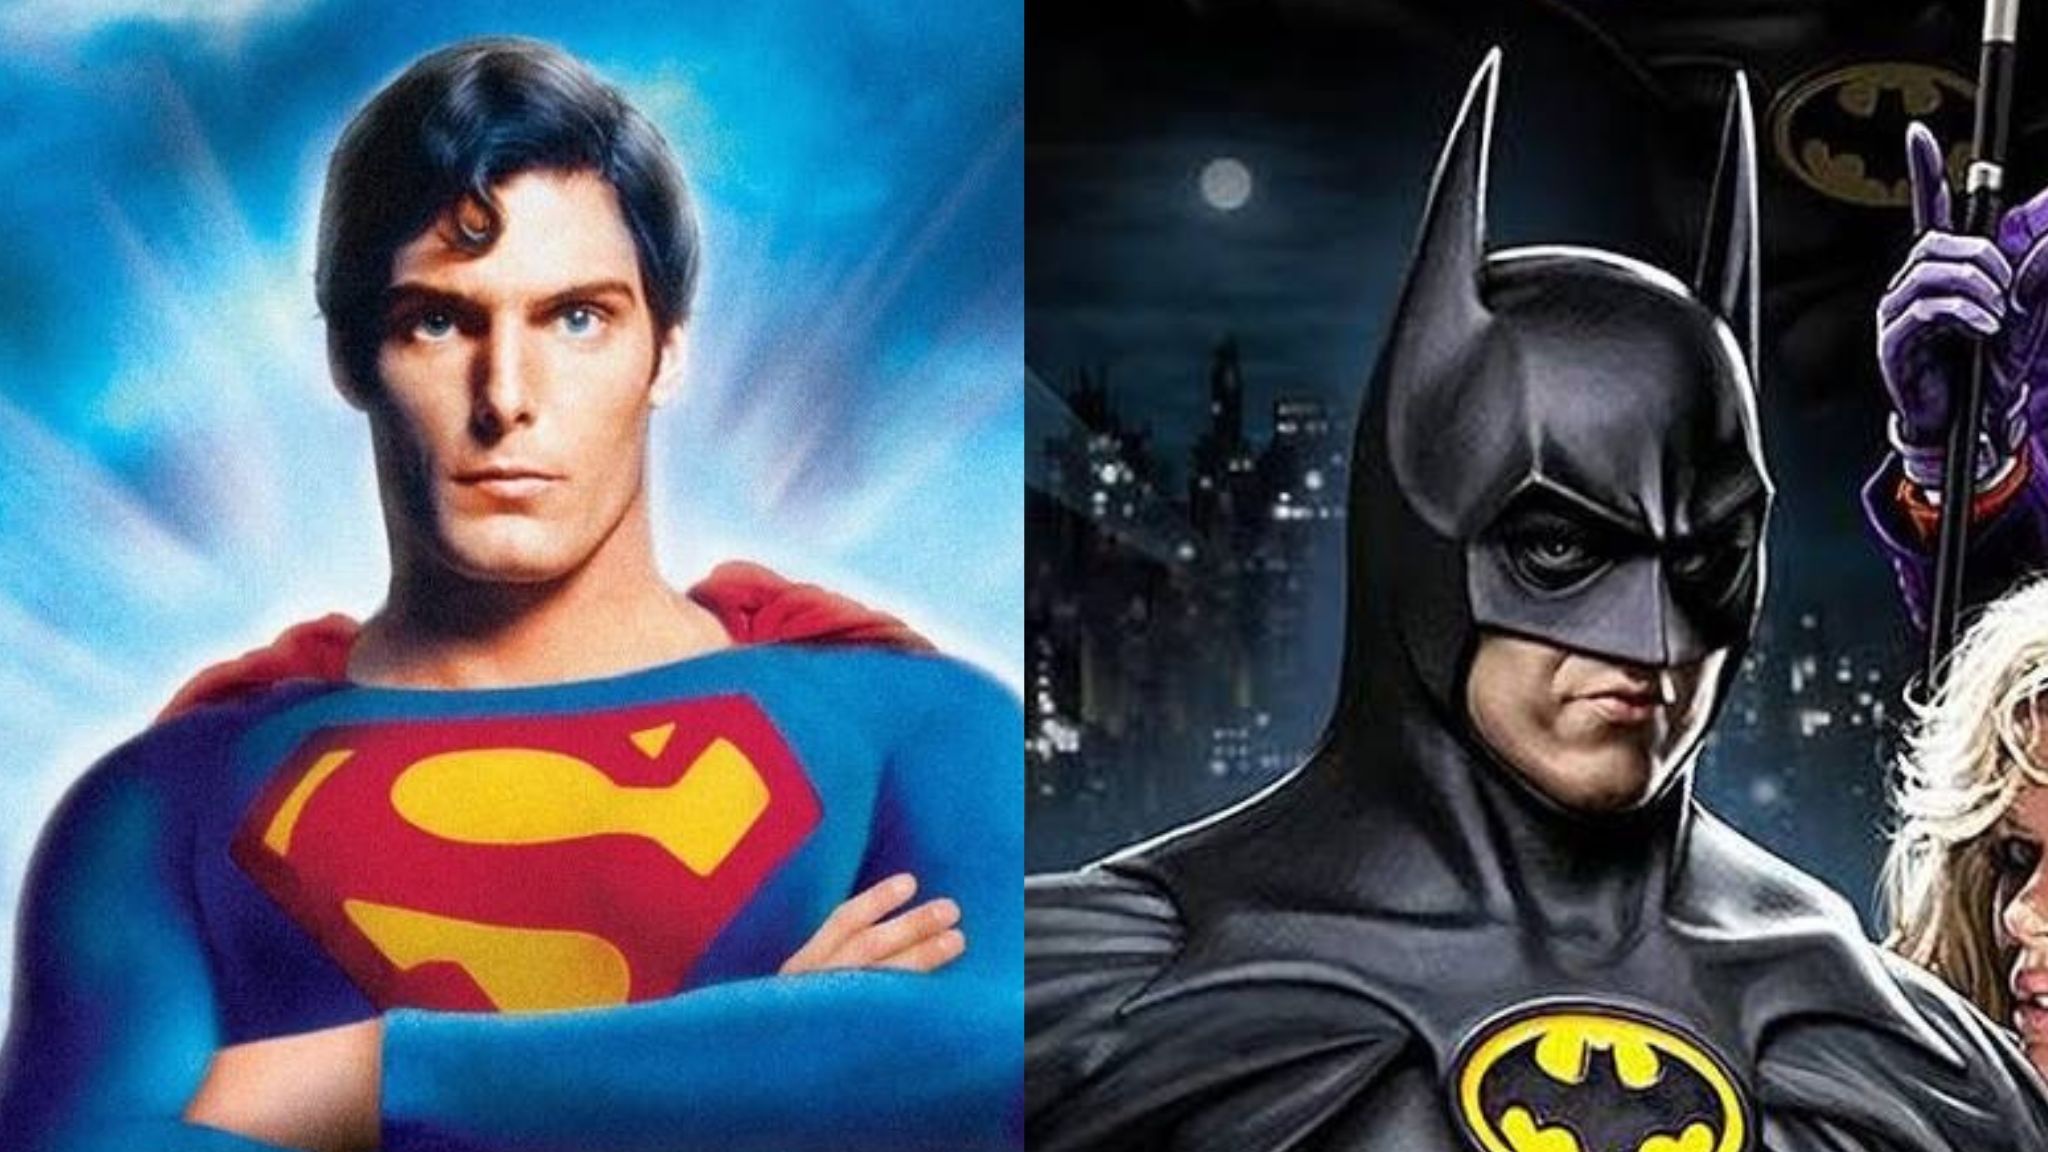 COMIXCON: Superman (1978) & Batman (1989) Double Feature presale password